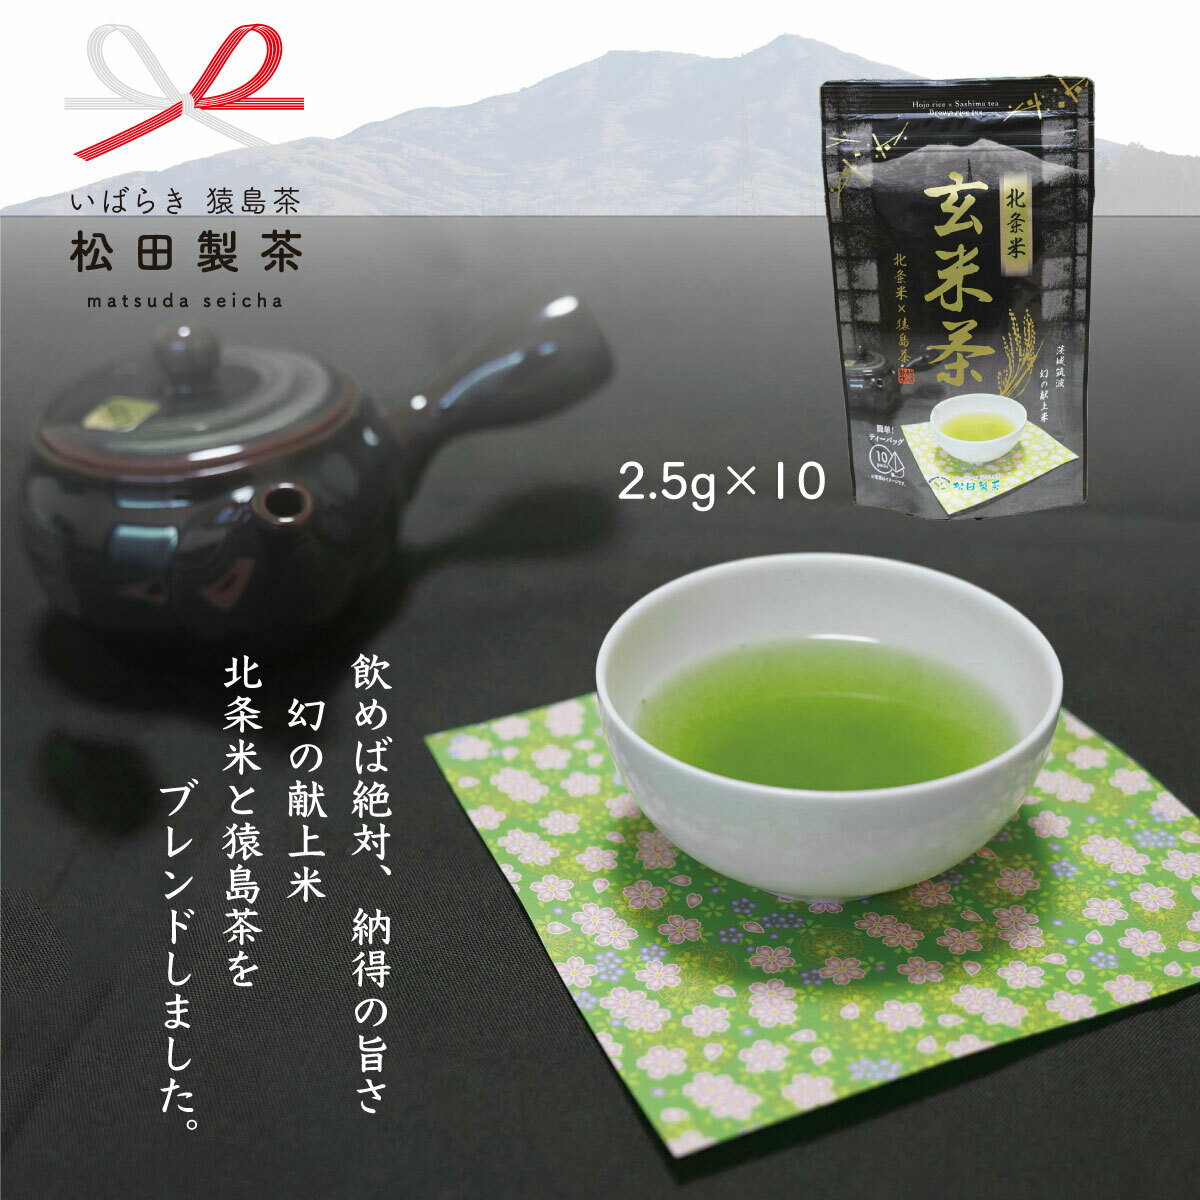 お茶 北条米玄米茶 幻の献上米 猿島茶 さしま茶 2.5g×10個入り お茶 ティーバッグ 日本茶 送料無料 クリックポスト